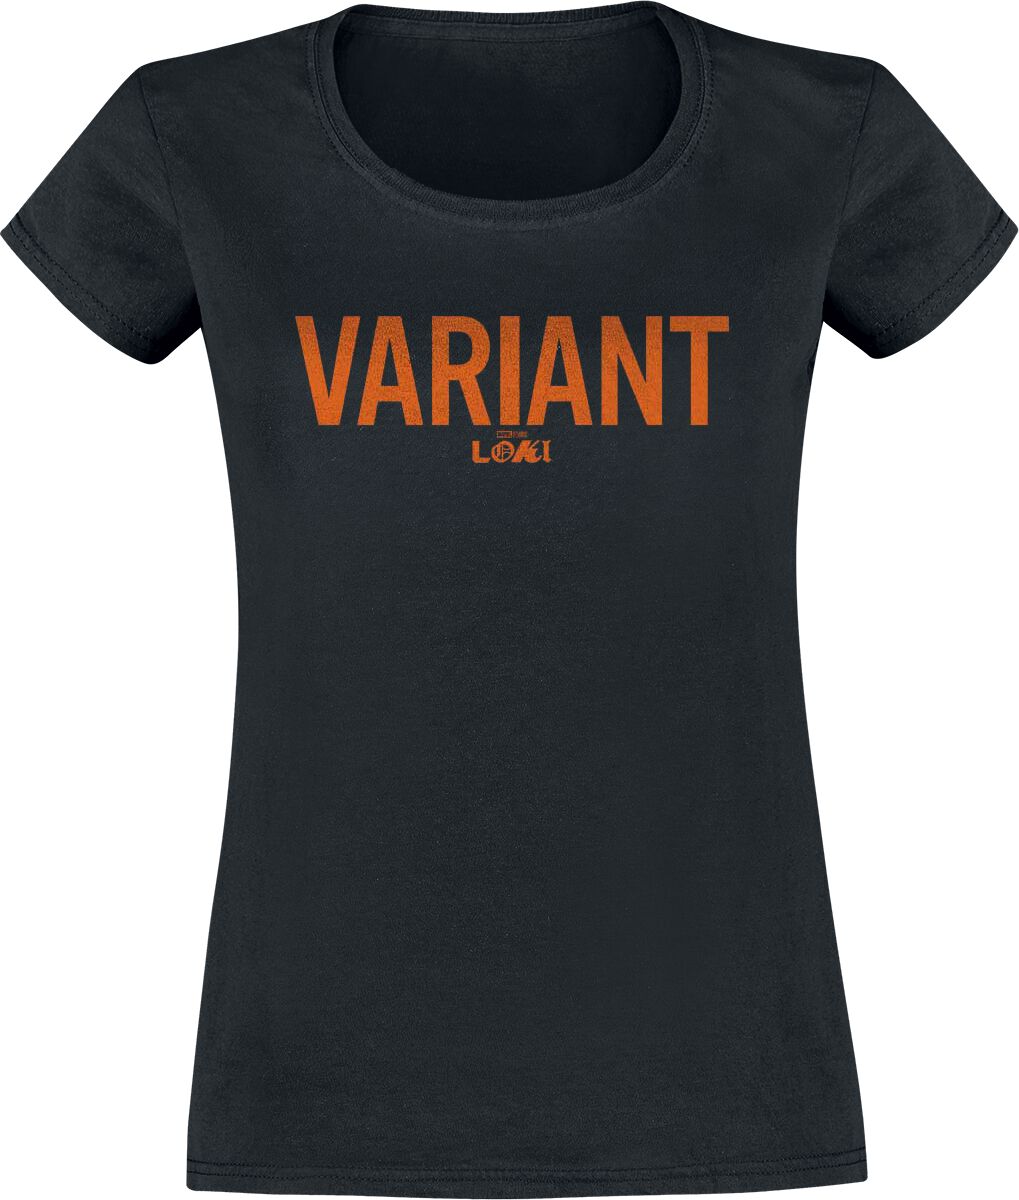 T-Shirt Manches courtes de Loki - Variants - S à XXL - pour Femme - noir